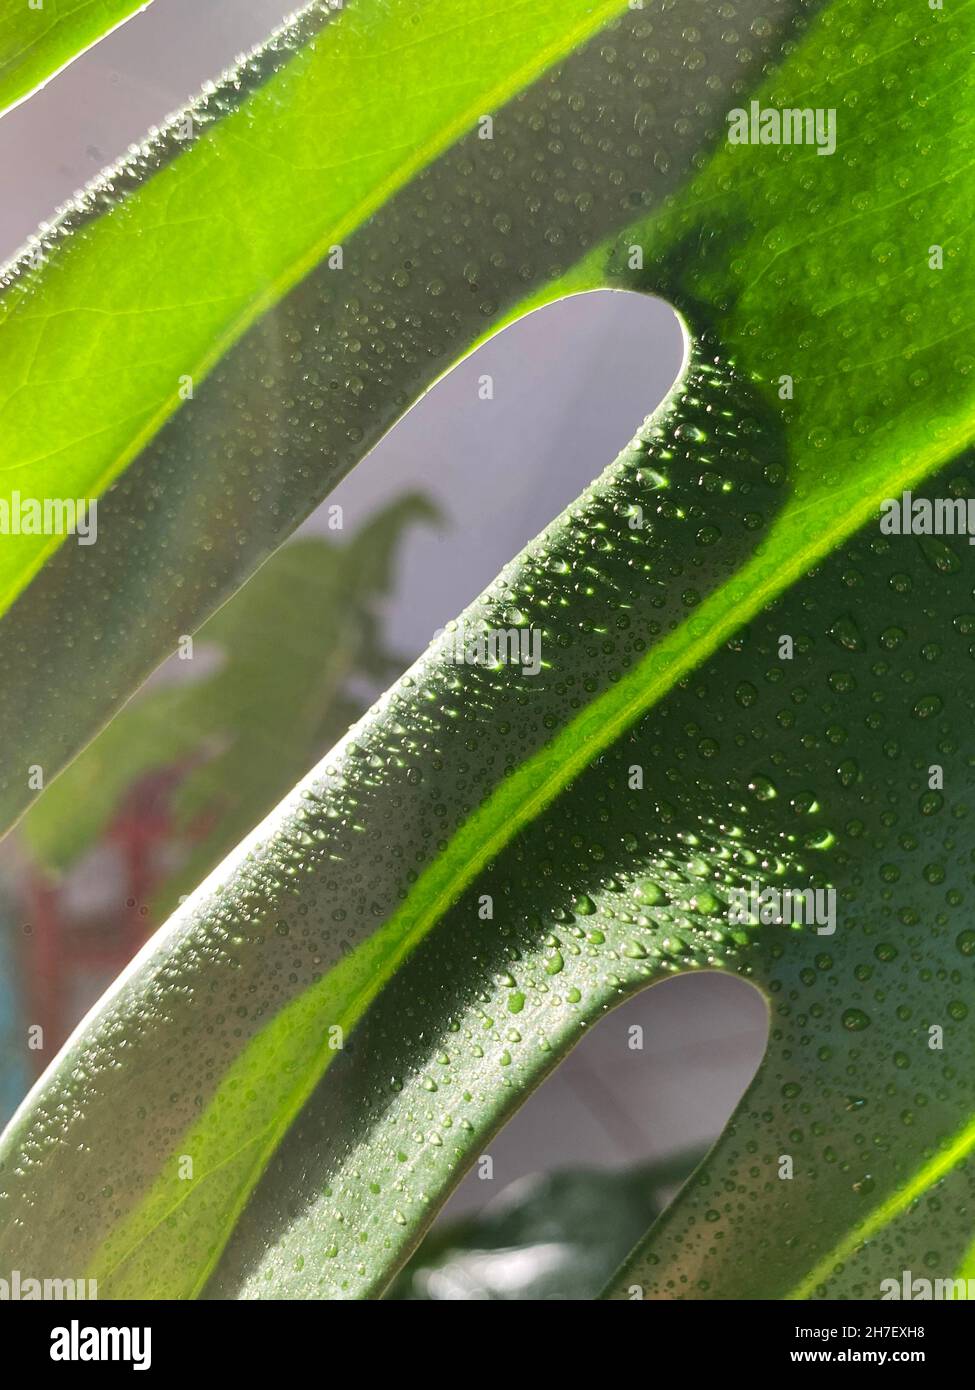 Fotos für grünen Hintergrund. Natürliche Blätter von Mostera delicios, in natürlichem Licht und Nahaufnahme. Stockfoto